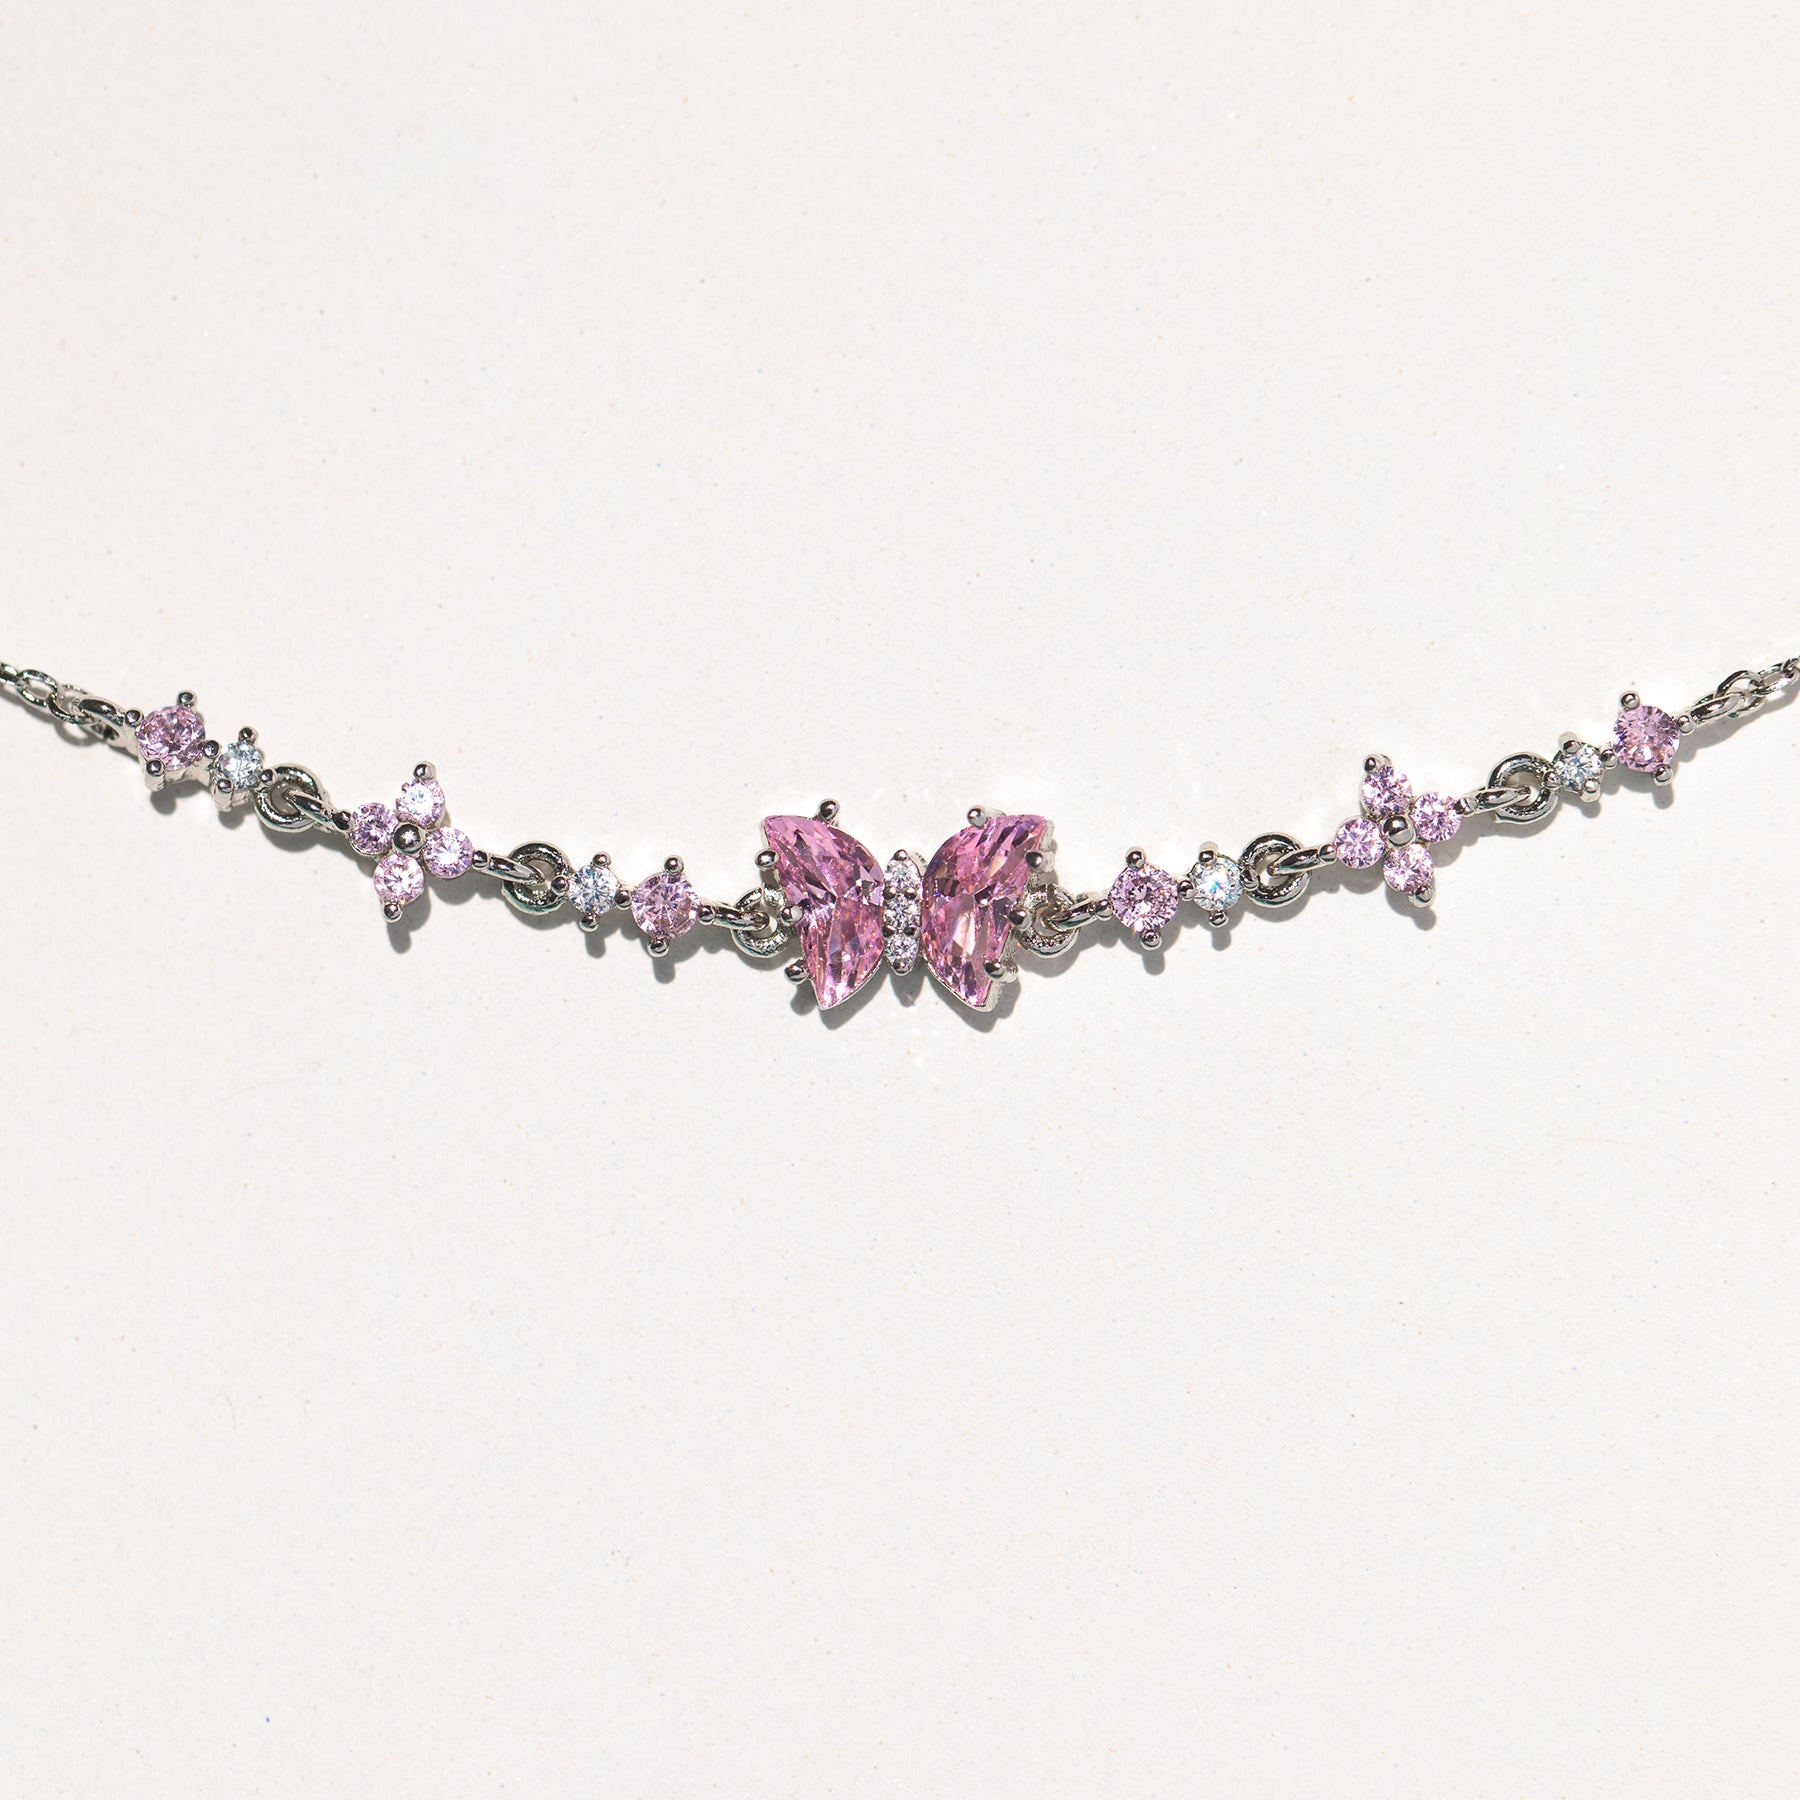 LOUIS VUITTON 18k Flower Diamond/Pink Sapphire Earrings